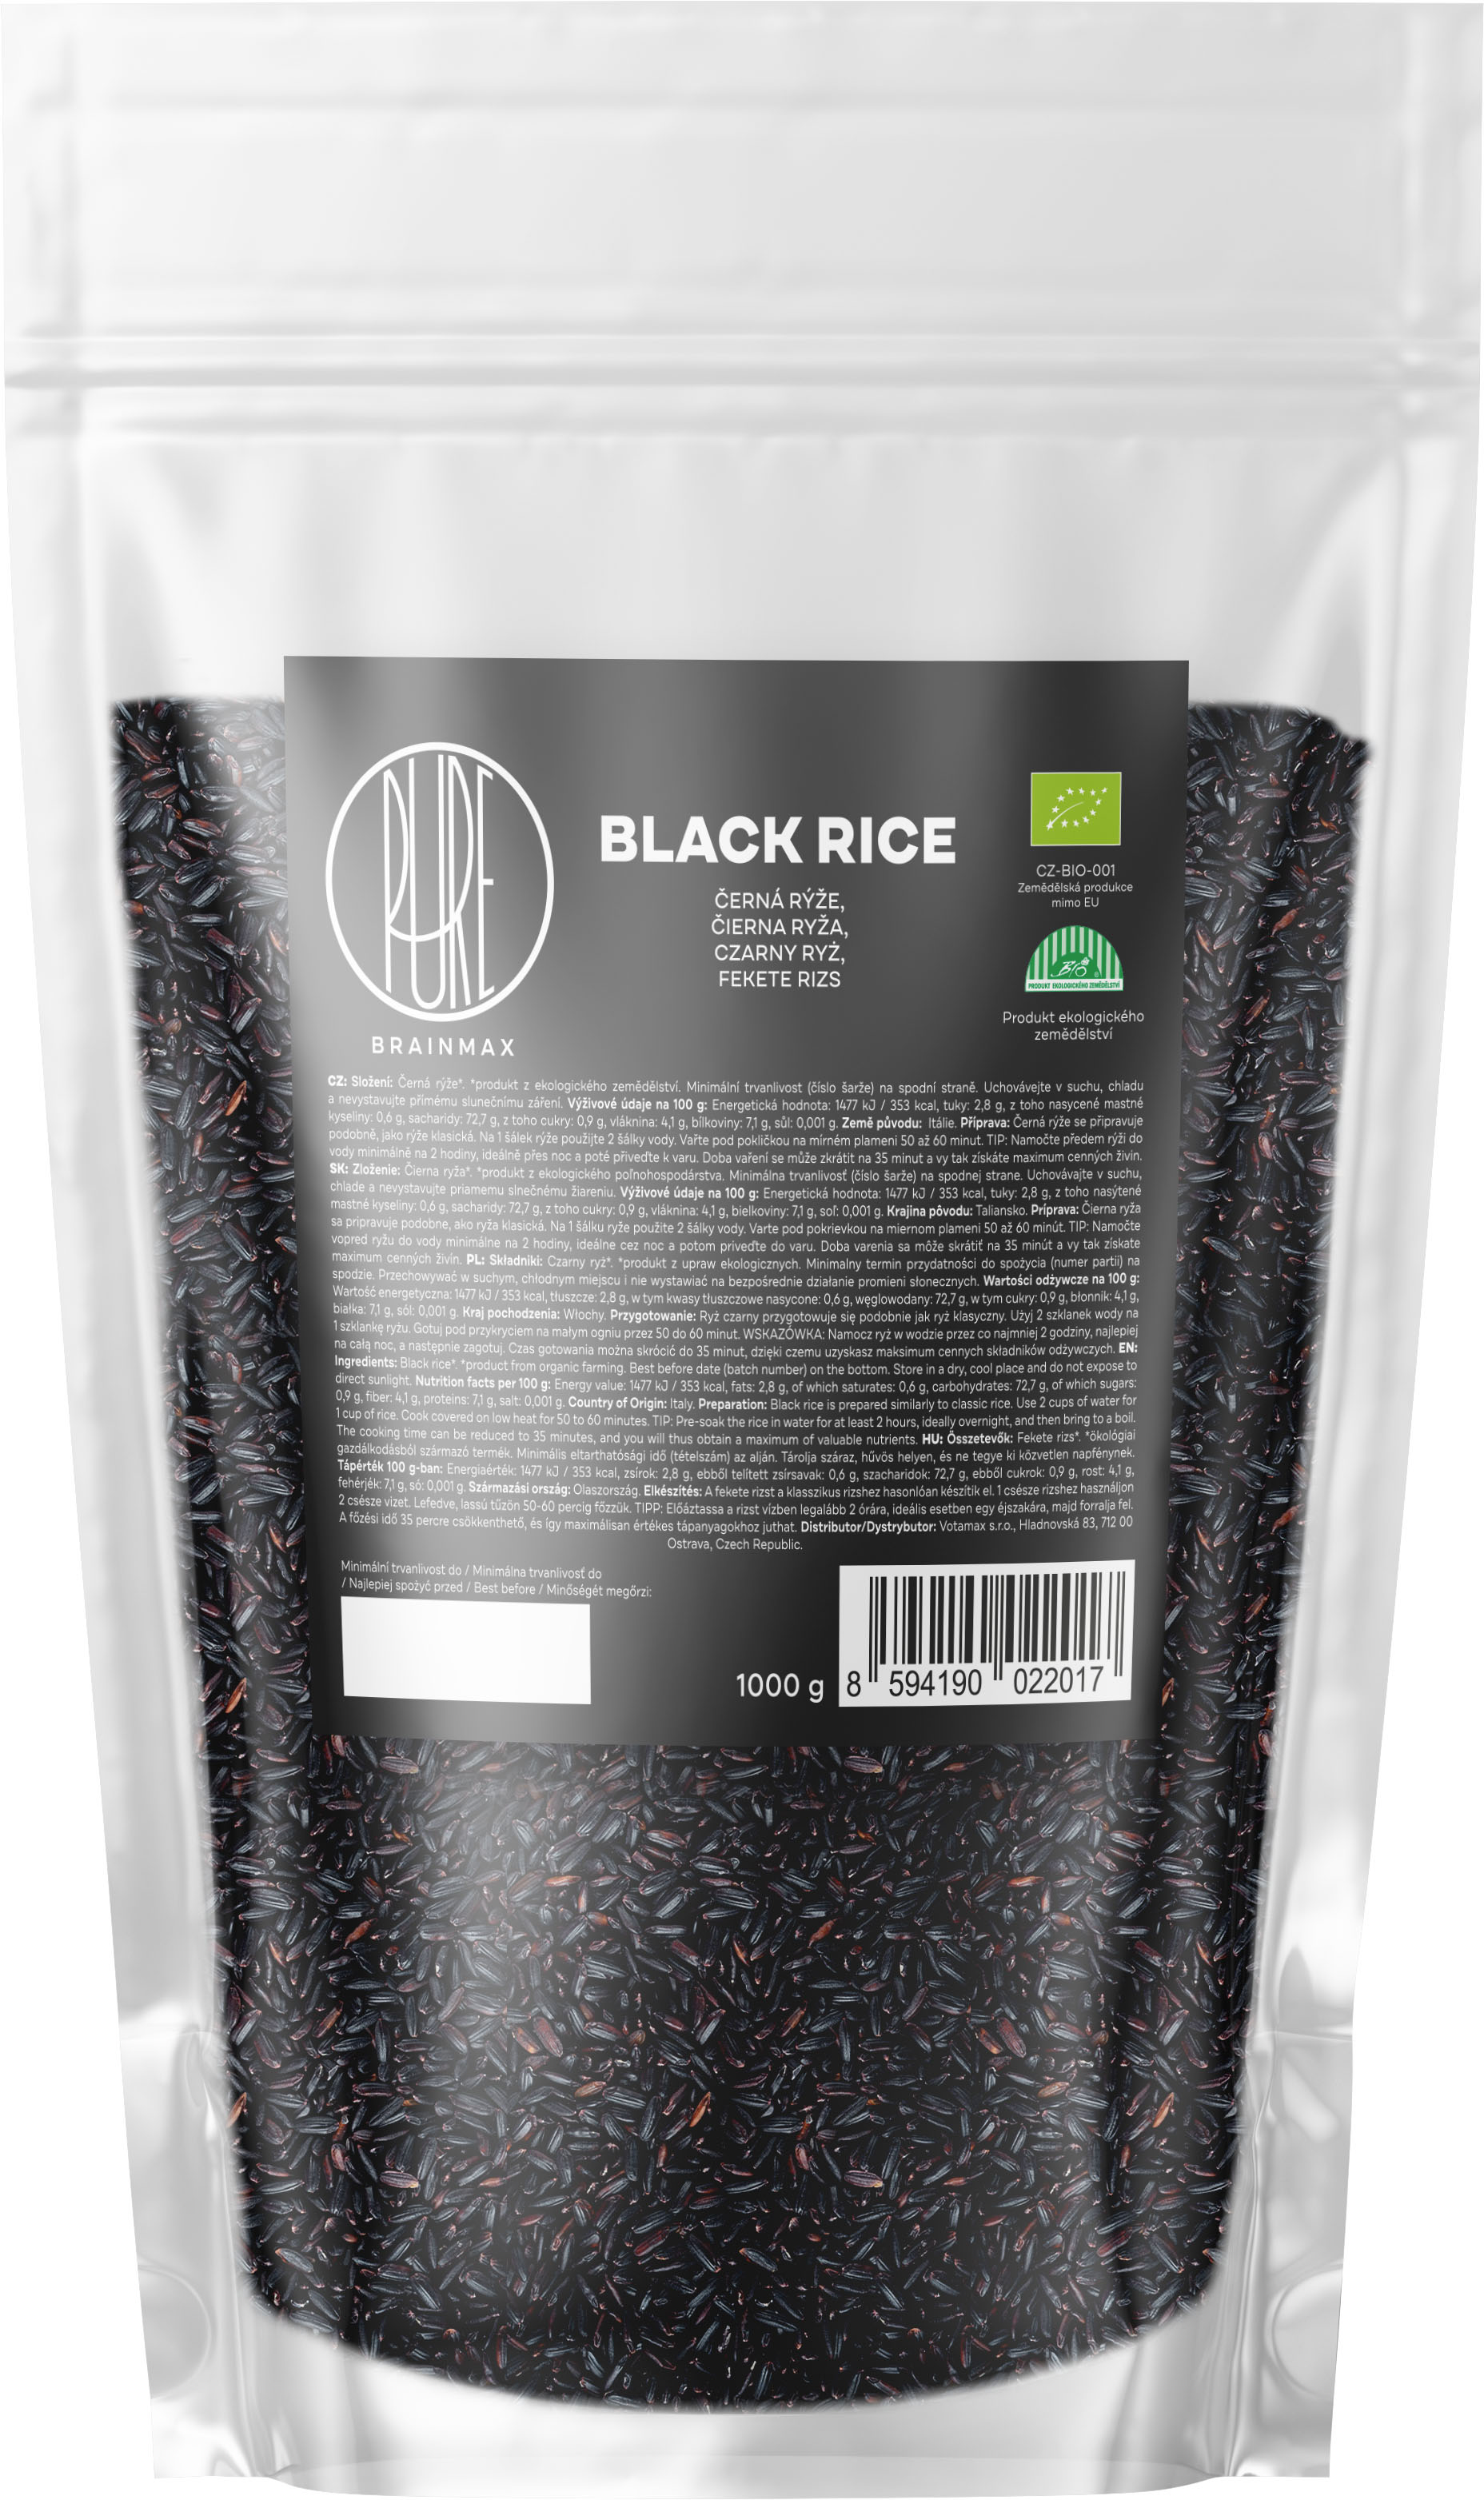 BrainMax Pure Rýže, černá BIO, 1kg *CZ-BIO-001 certifikát